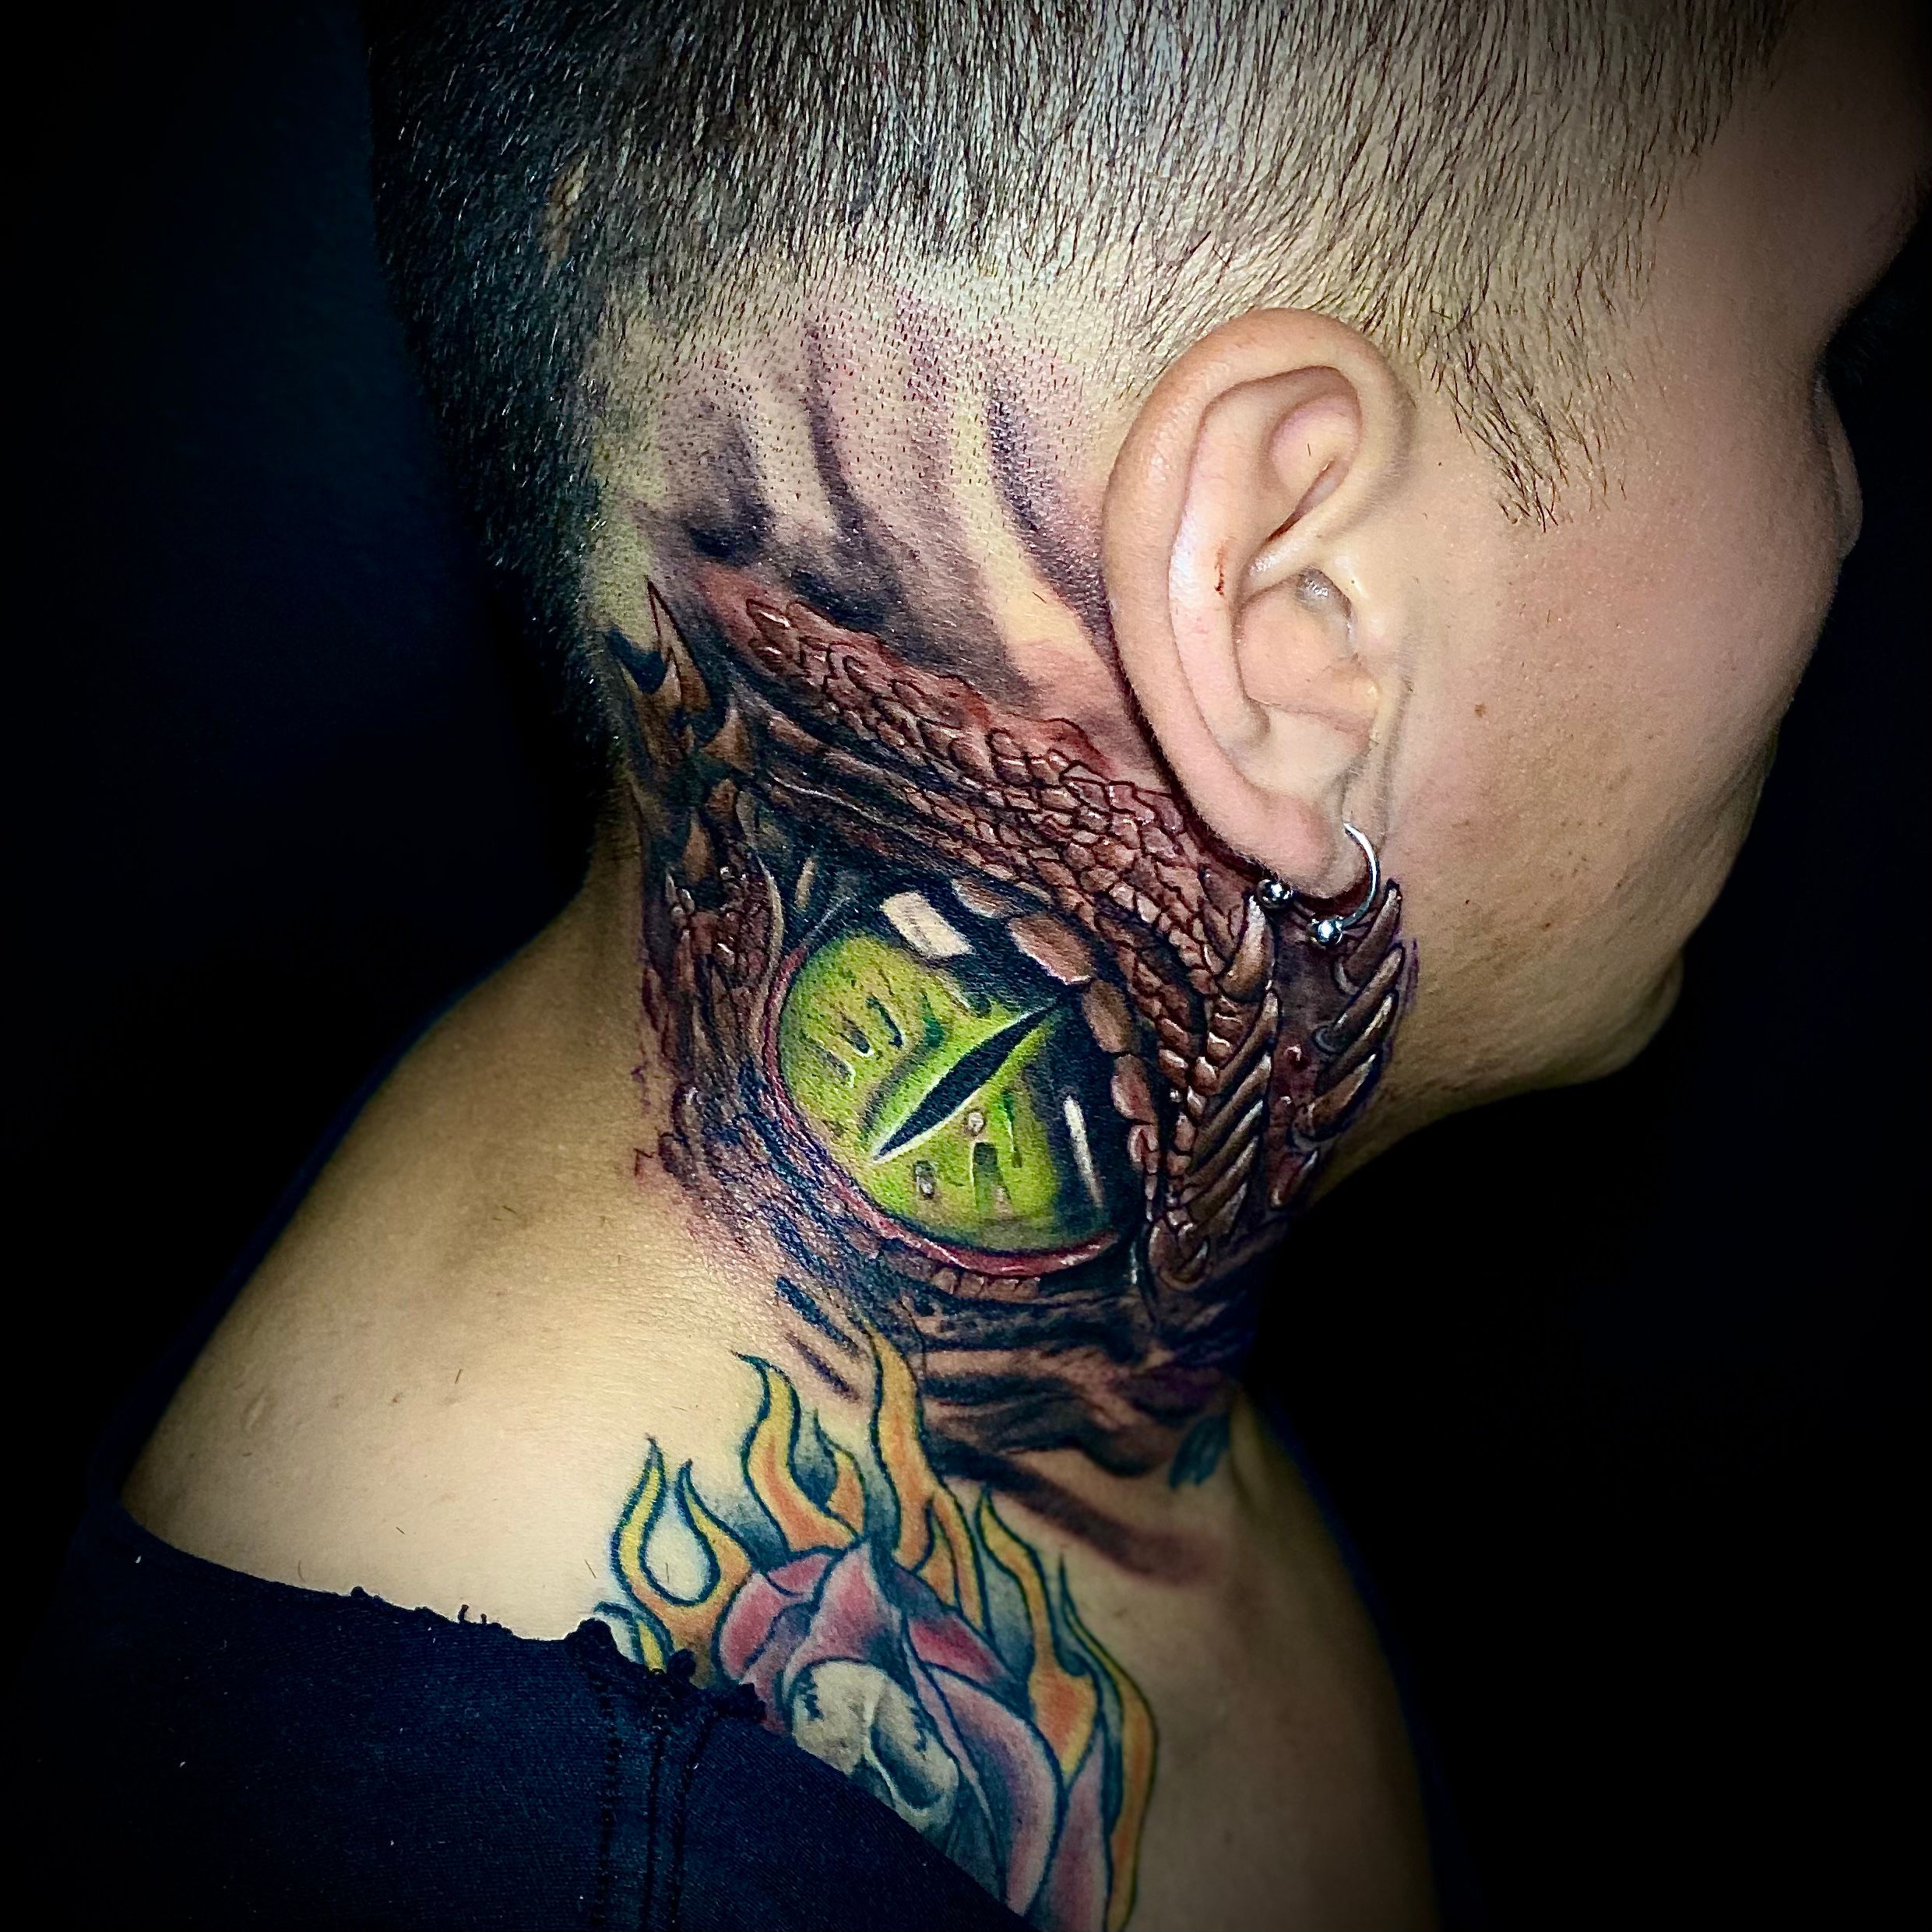 All seeing eye neck tattoo  Neck tattoo Tattoos Skull tattoo